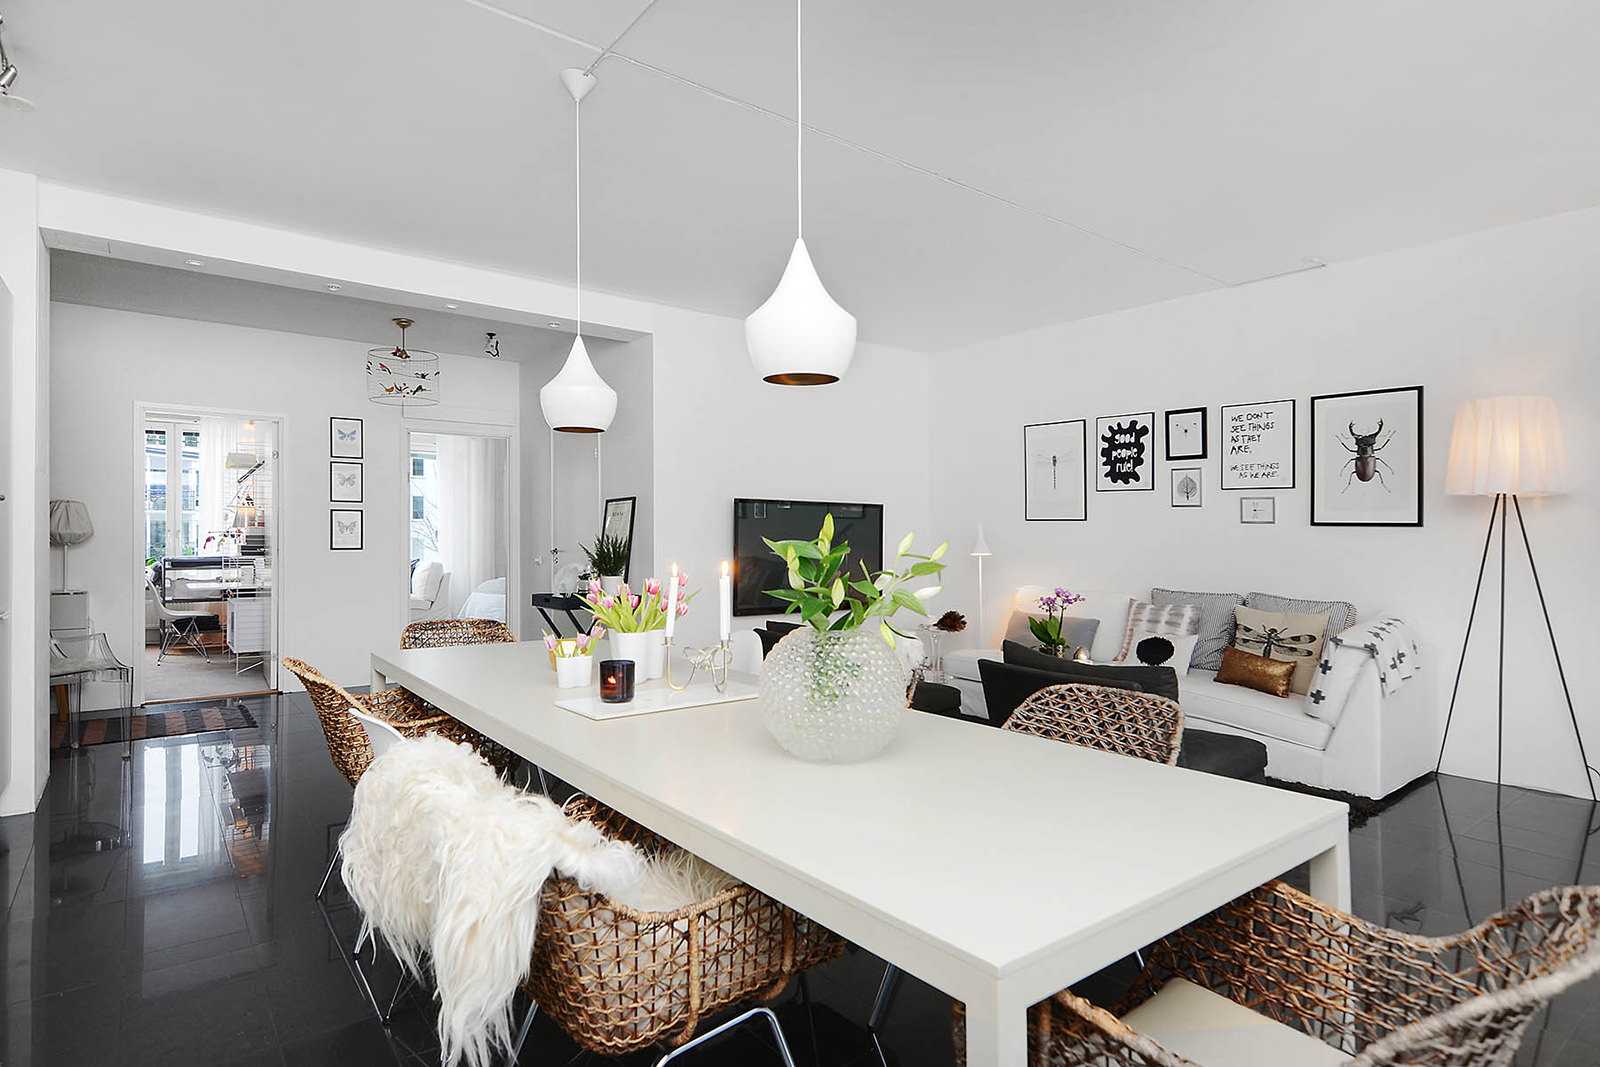 pereți albi în interiorul unui apartament în stilul minimalismului